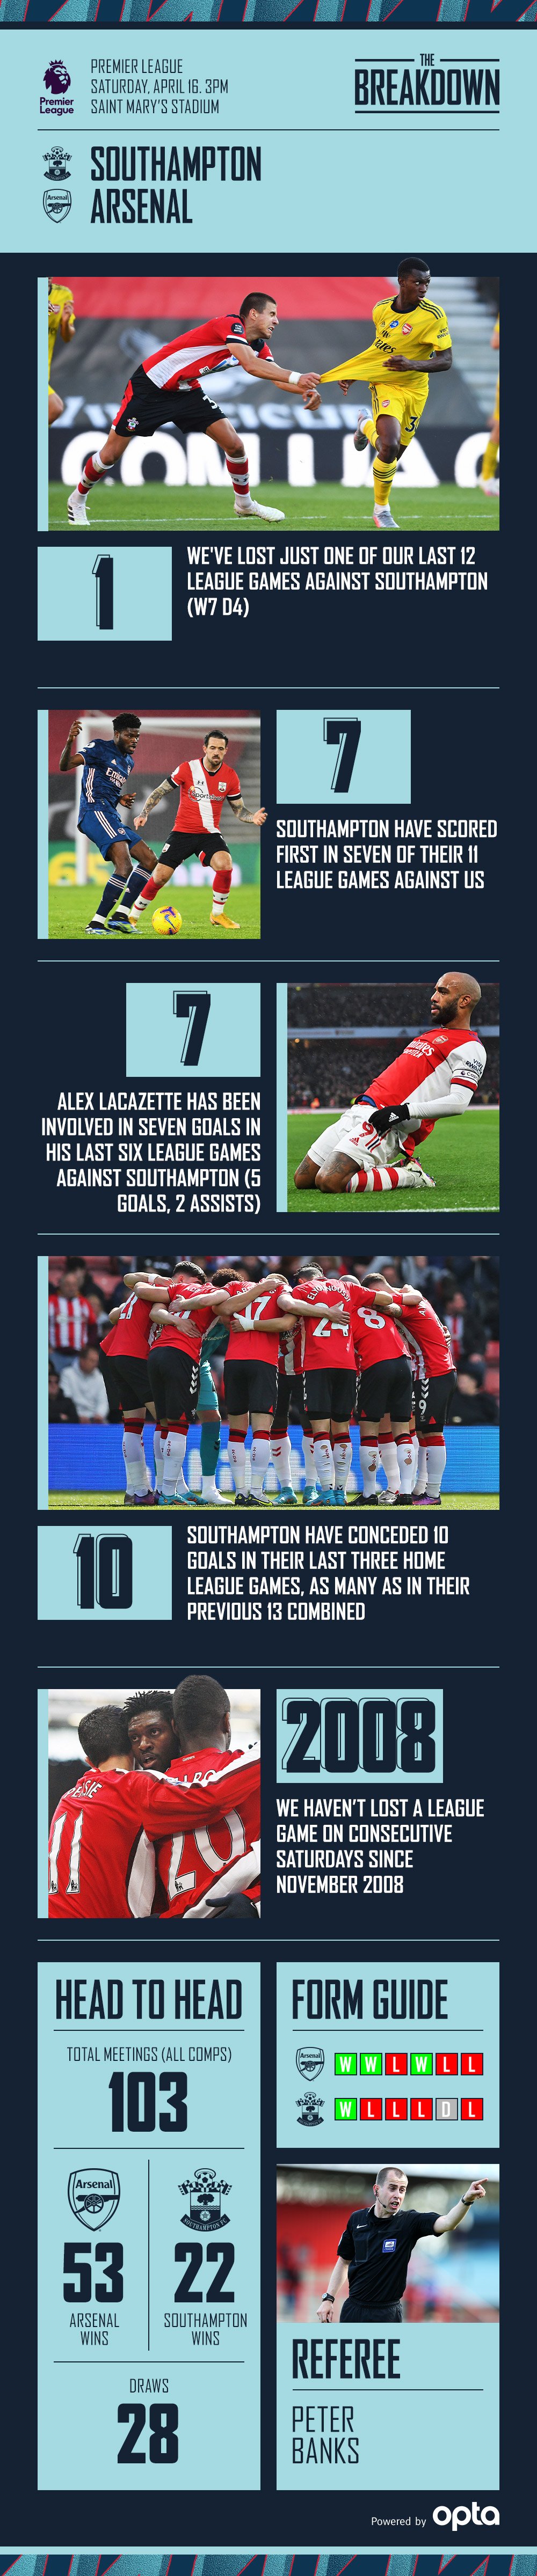 Southampton vs Arsenal Breakdown